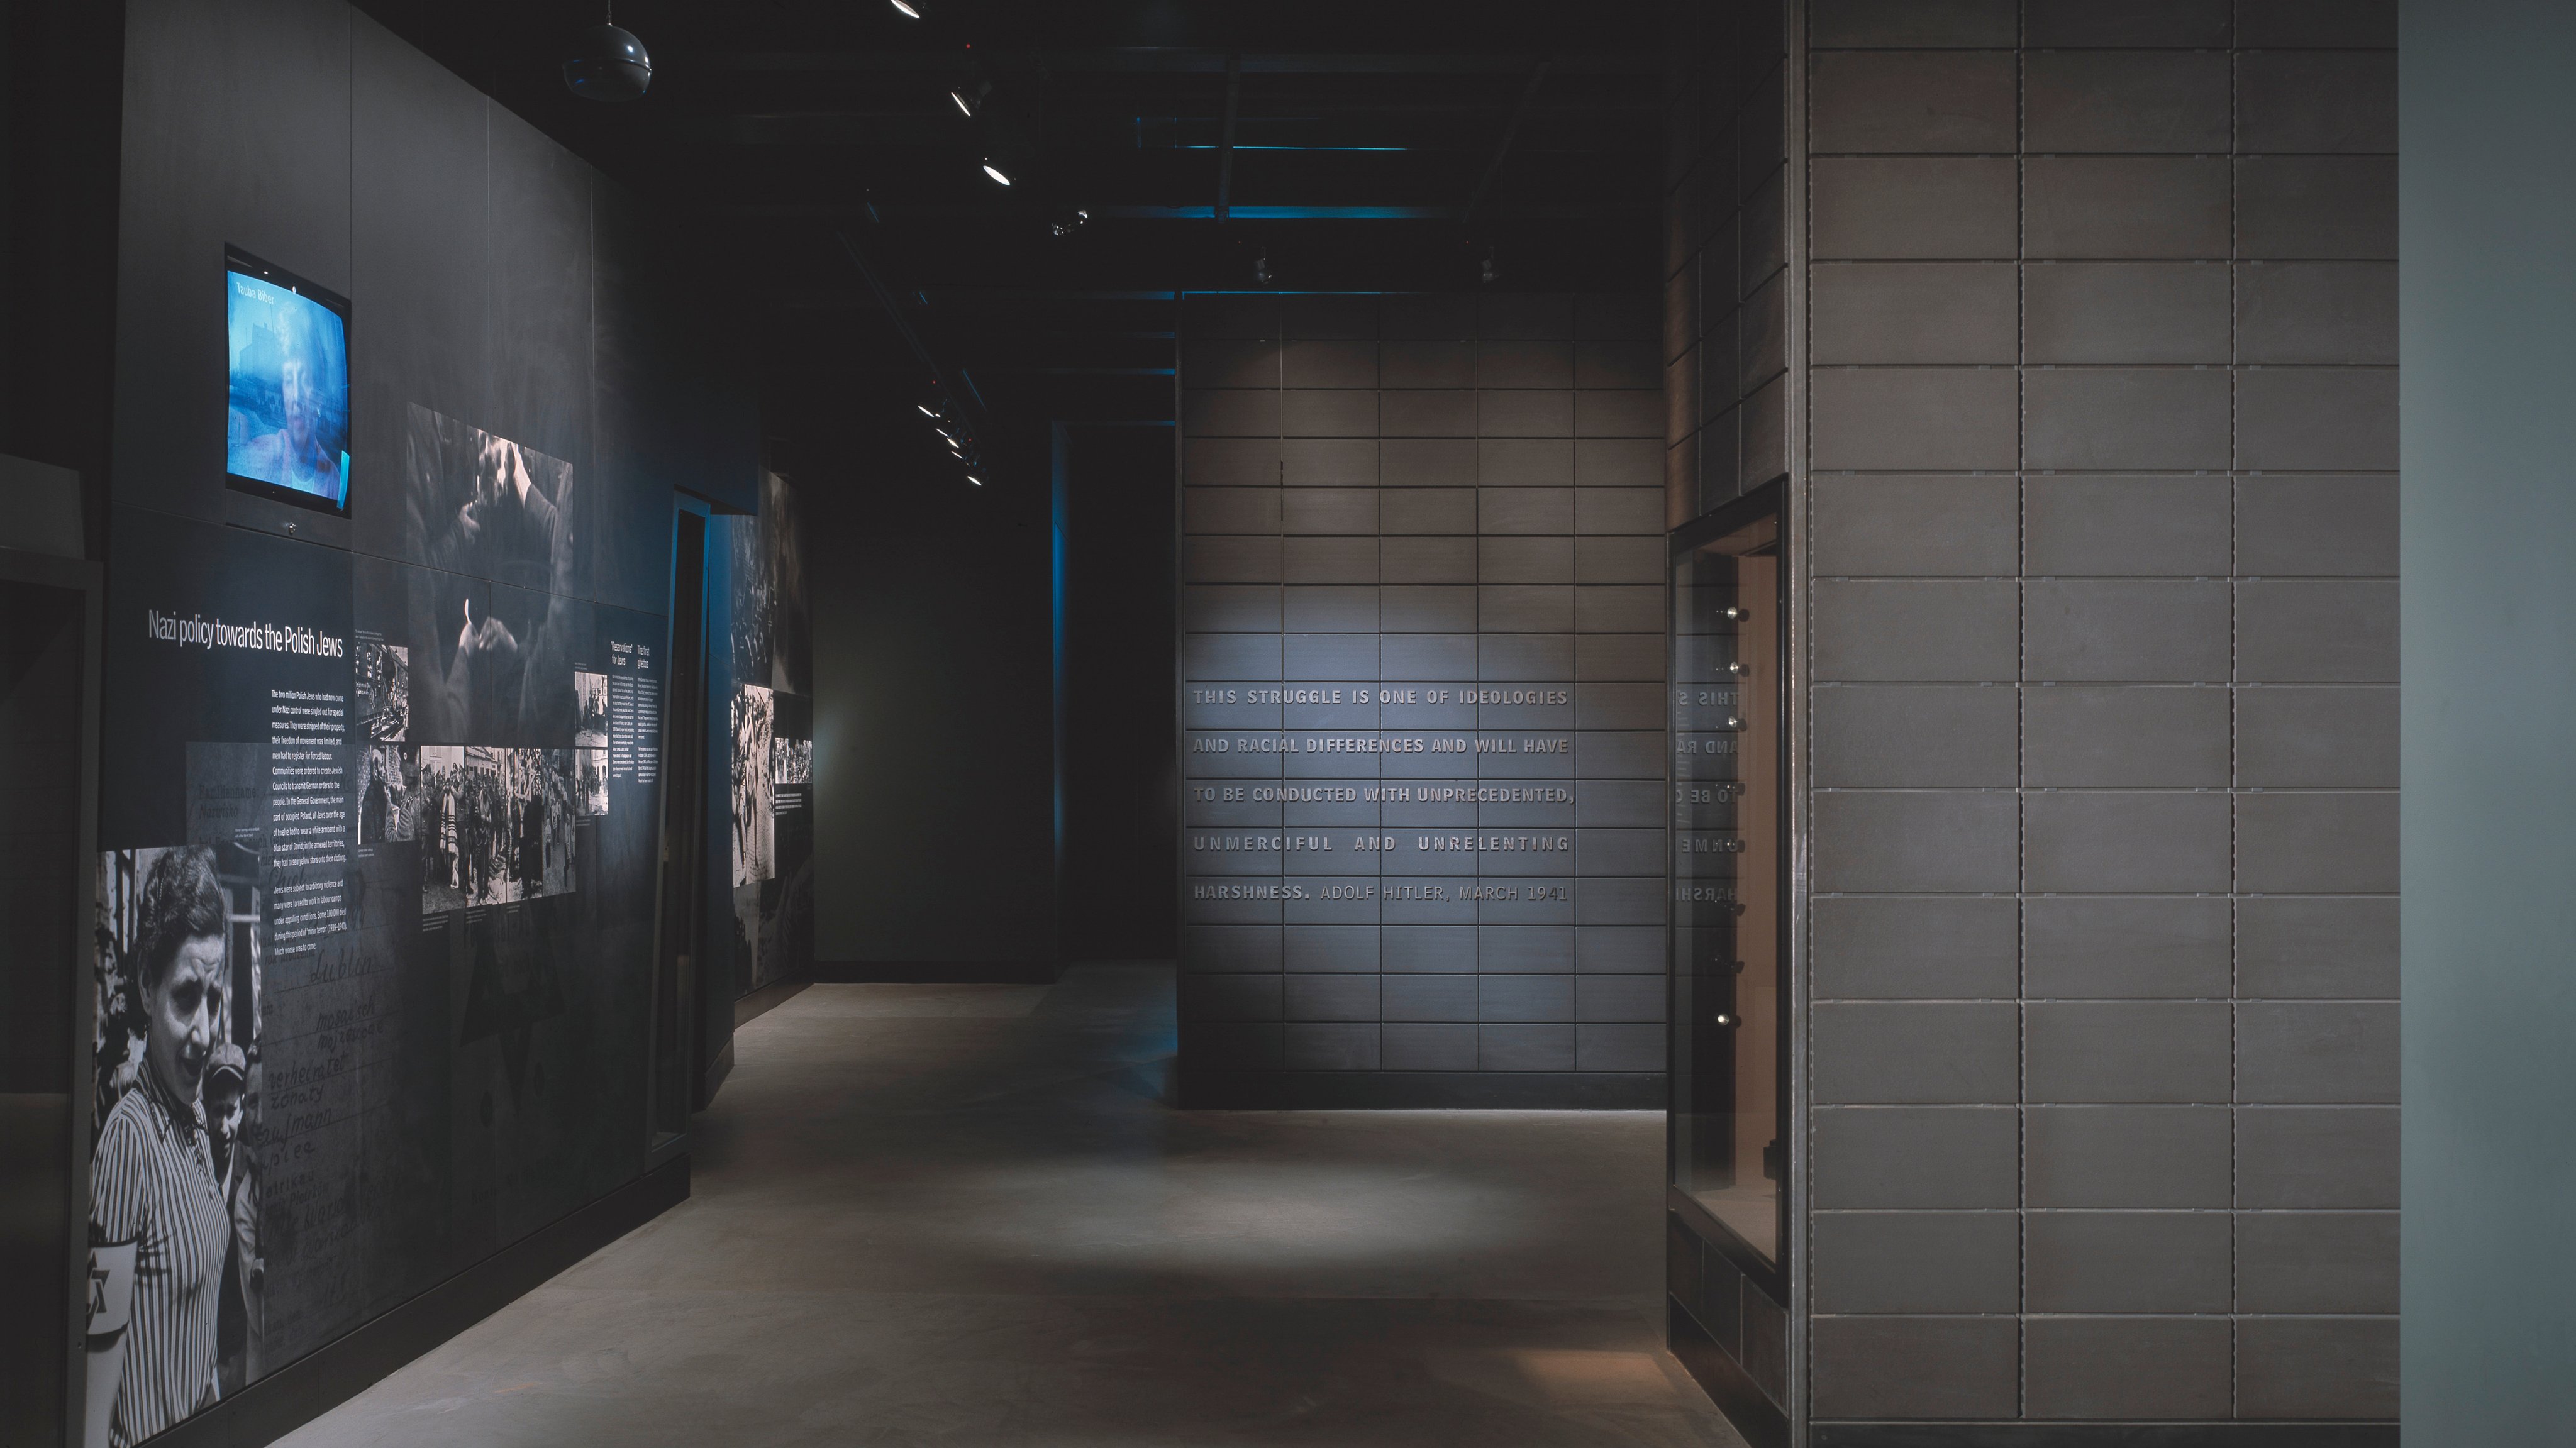 Galerias do Holocausto no Museu de Guerra Imperial de Londres